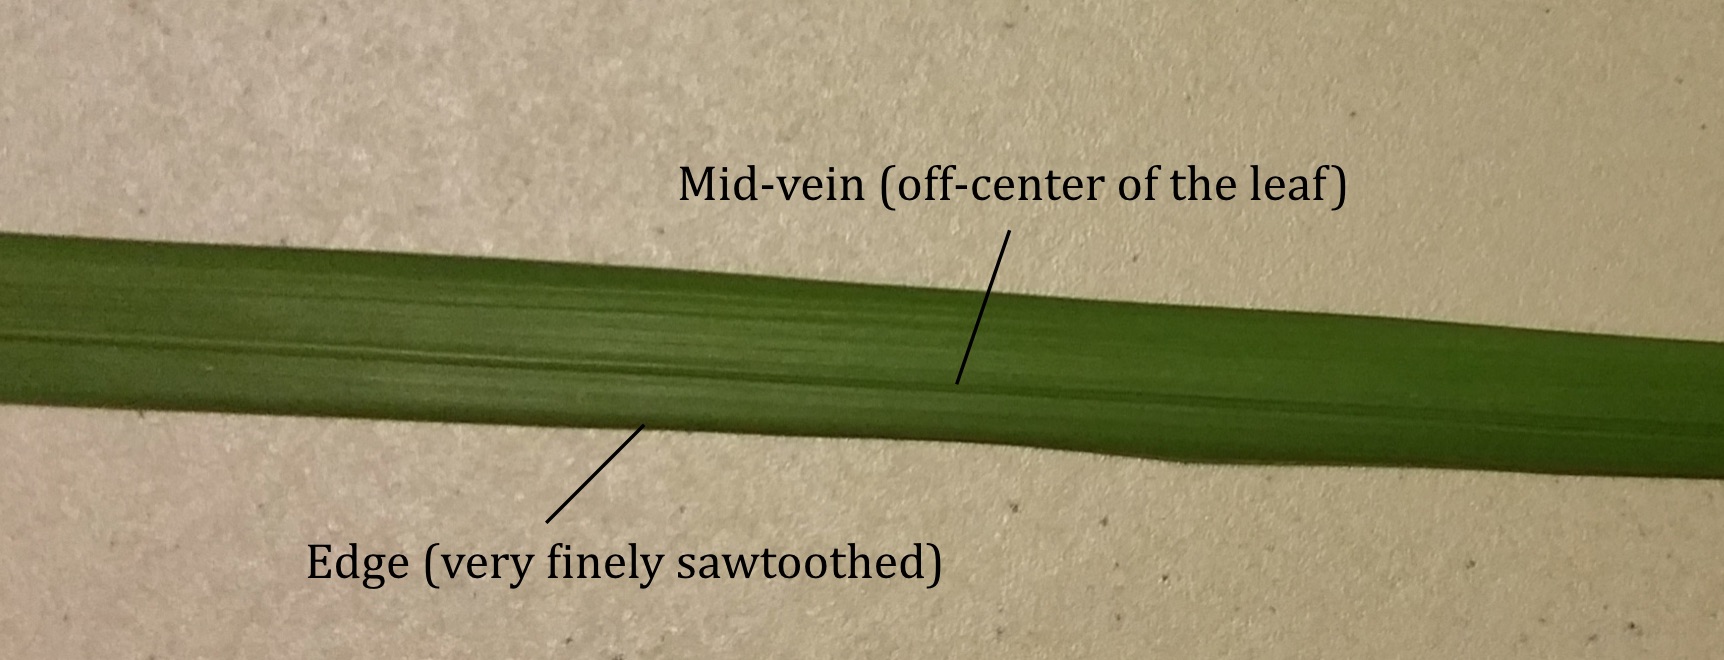 Off-center mid-vein lalang leaf.jpg